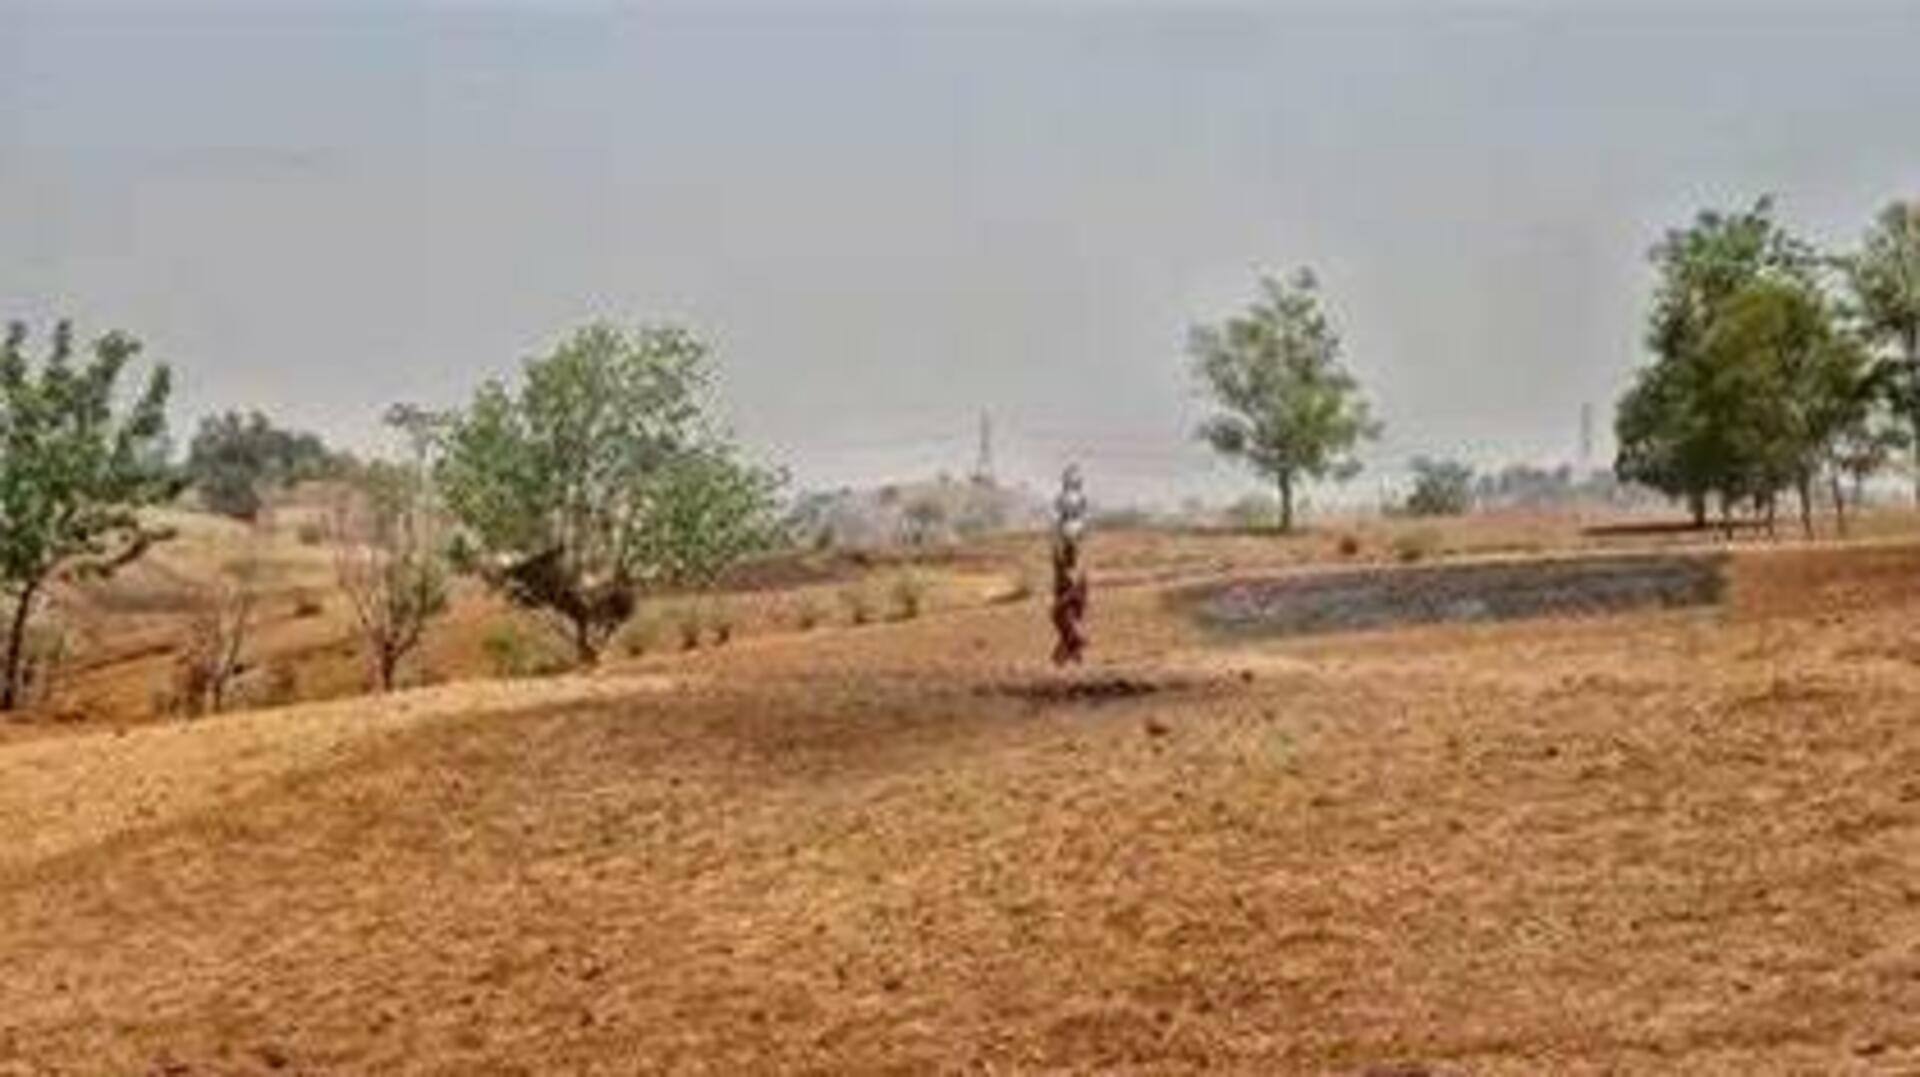 தமிழகத்தில் 6 மாவட்டங்களில் 25 வட்டாரங்கள் வேளாண் வறட்சி பகுதிகள் என அறிவிப்பு 